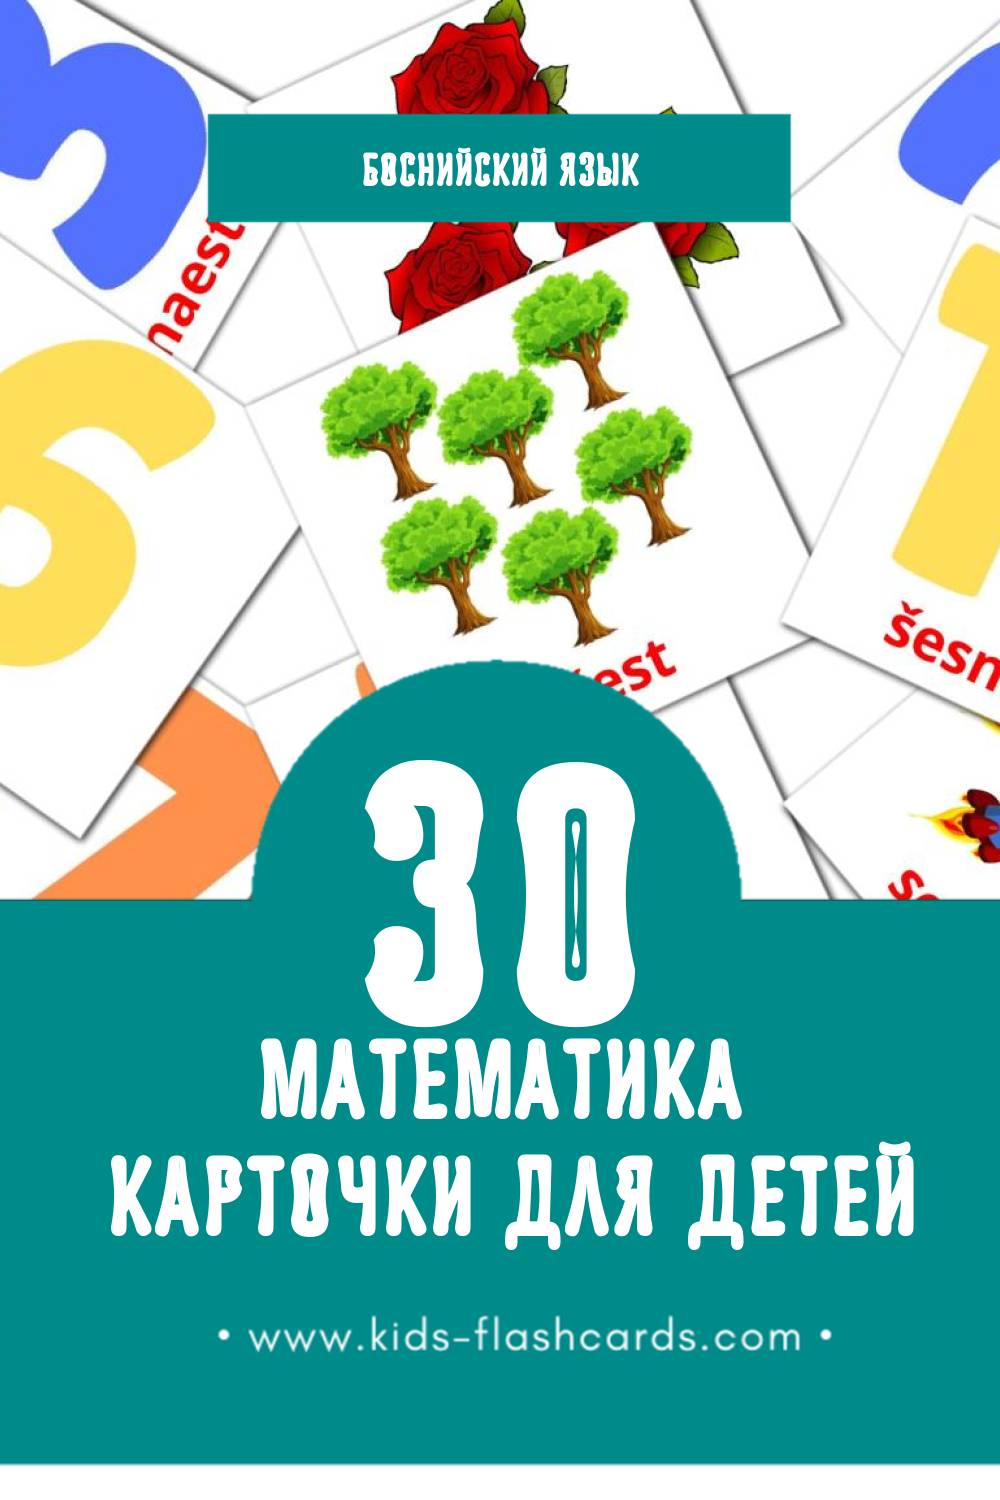 "Maths" - Визуальный Боснийском Словарь для Малышей (20 картинок)